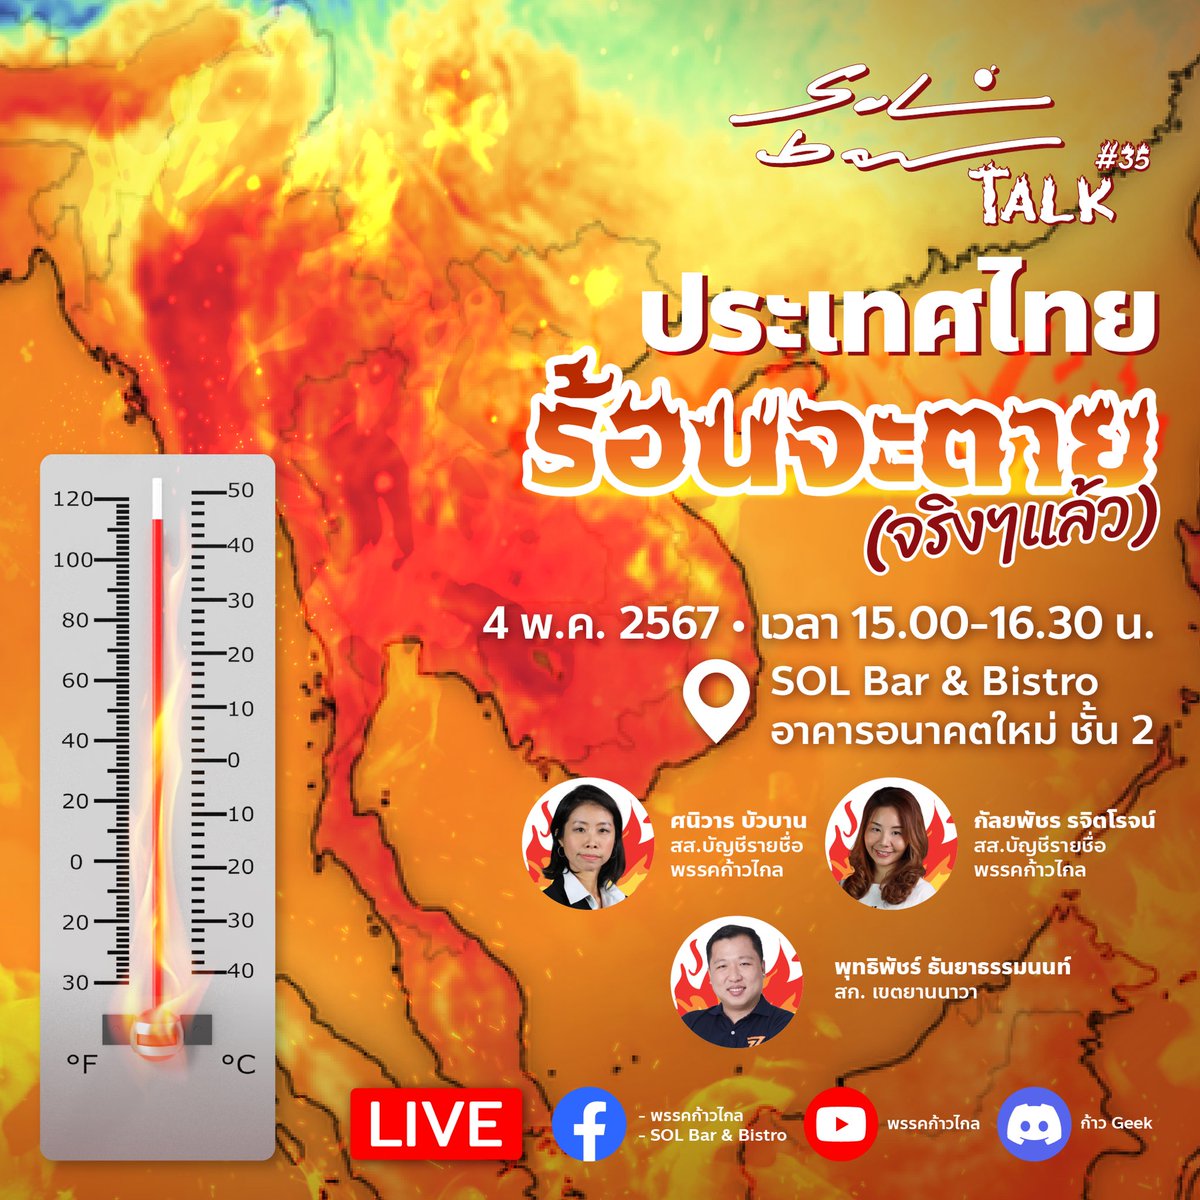 อากาศมันร้อนเหลือเกิน 🫠🌞 เสาร์นี้หนีร้อนมาจิบเครื่องดื่มเย็นๆที่ SOL Bar🍹พร้อมกับฟังเรื่องเดือดๆ ว่าด้วยเรื่องคลื่นความร้อนบุกประเทศไทย ว่าเกิดอะไรขึ้นทำไมมันถึงร้อนมากร้อนมายขนาดนี้ 🔥🌍 🔥โชว์สถิติอากาศร้อนแบบนี้ทำคนตายเพิ่มแค่ไหน 🔥แล้วรู้หรือไม่ว่าร้อนแบบนี้…